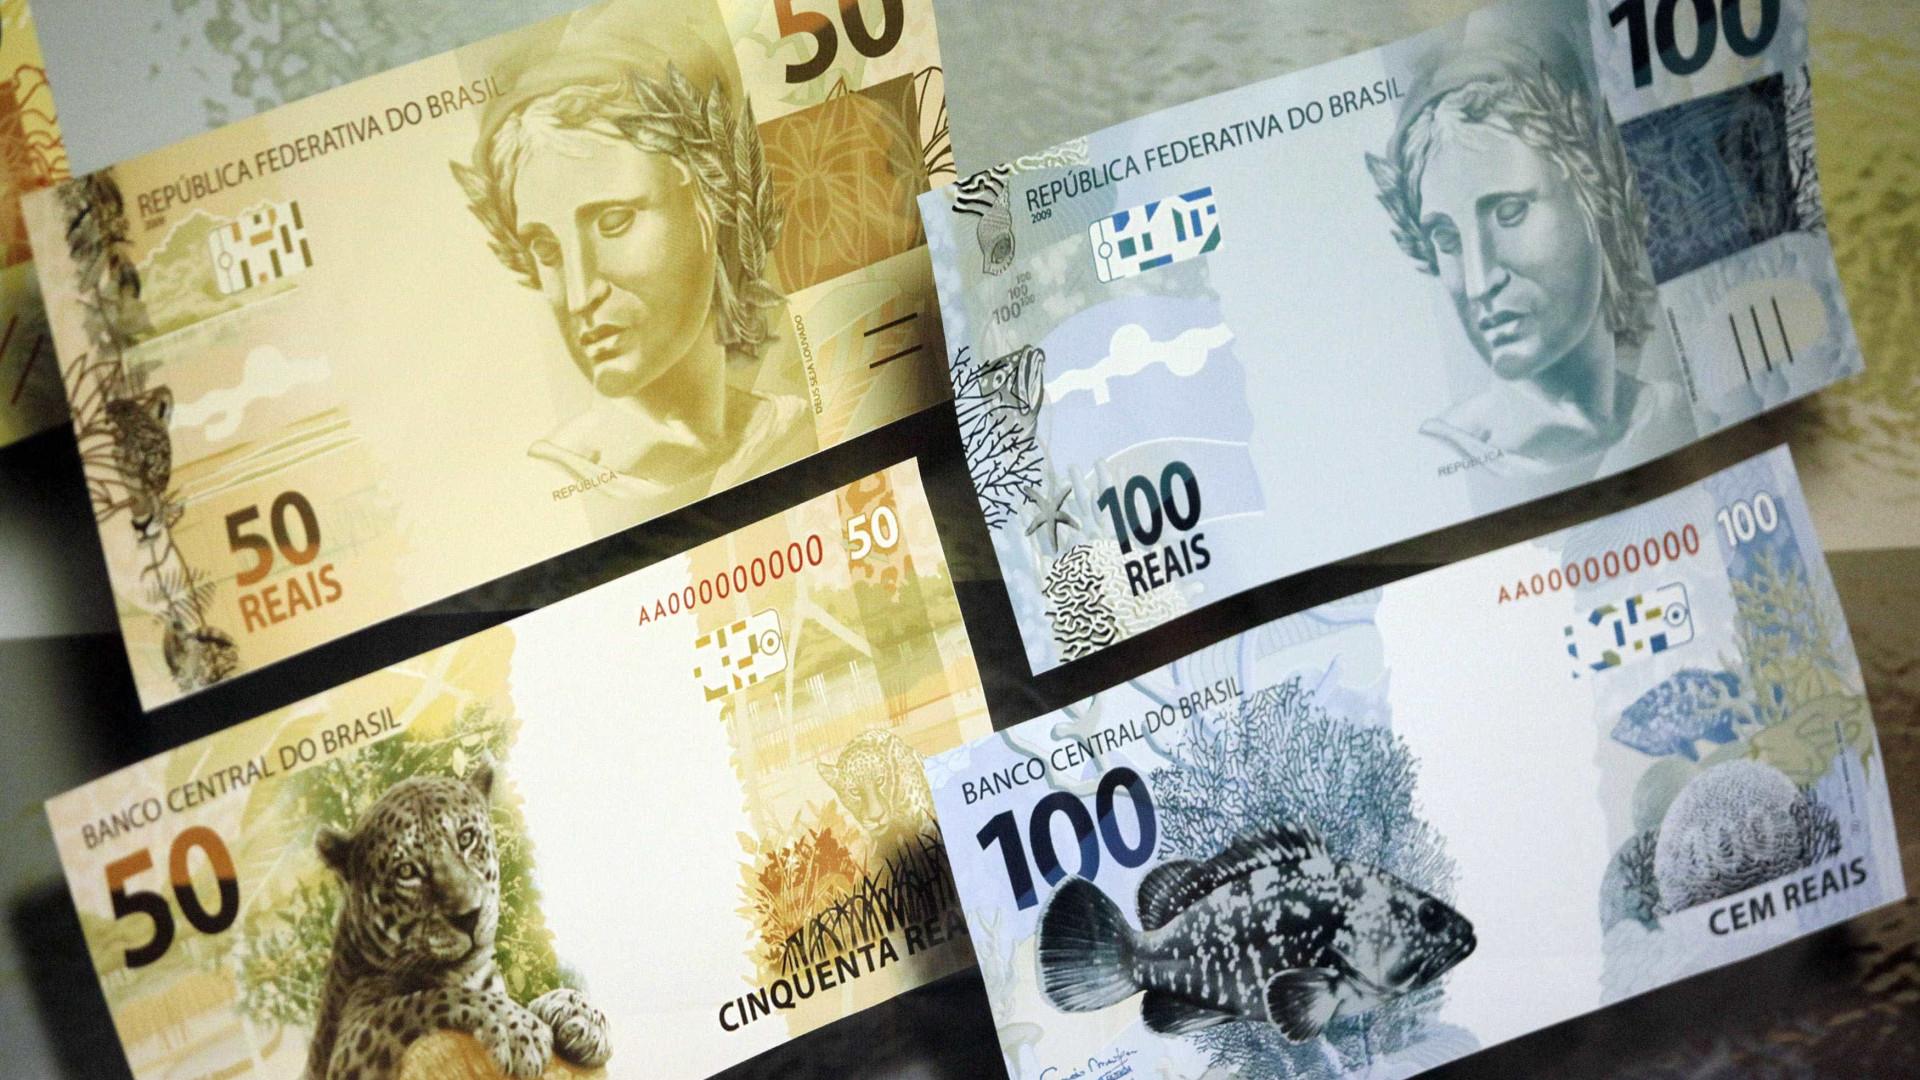 Diretor do BNDES confirma acordo para devolver R$ 50 bi ao Tesouro